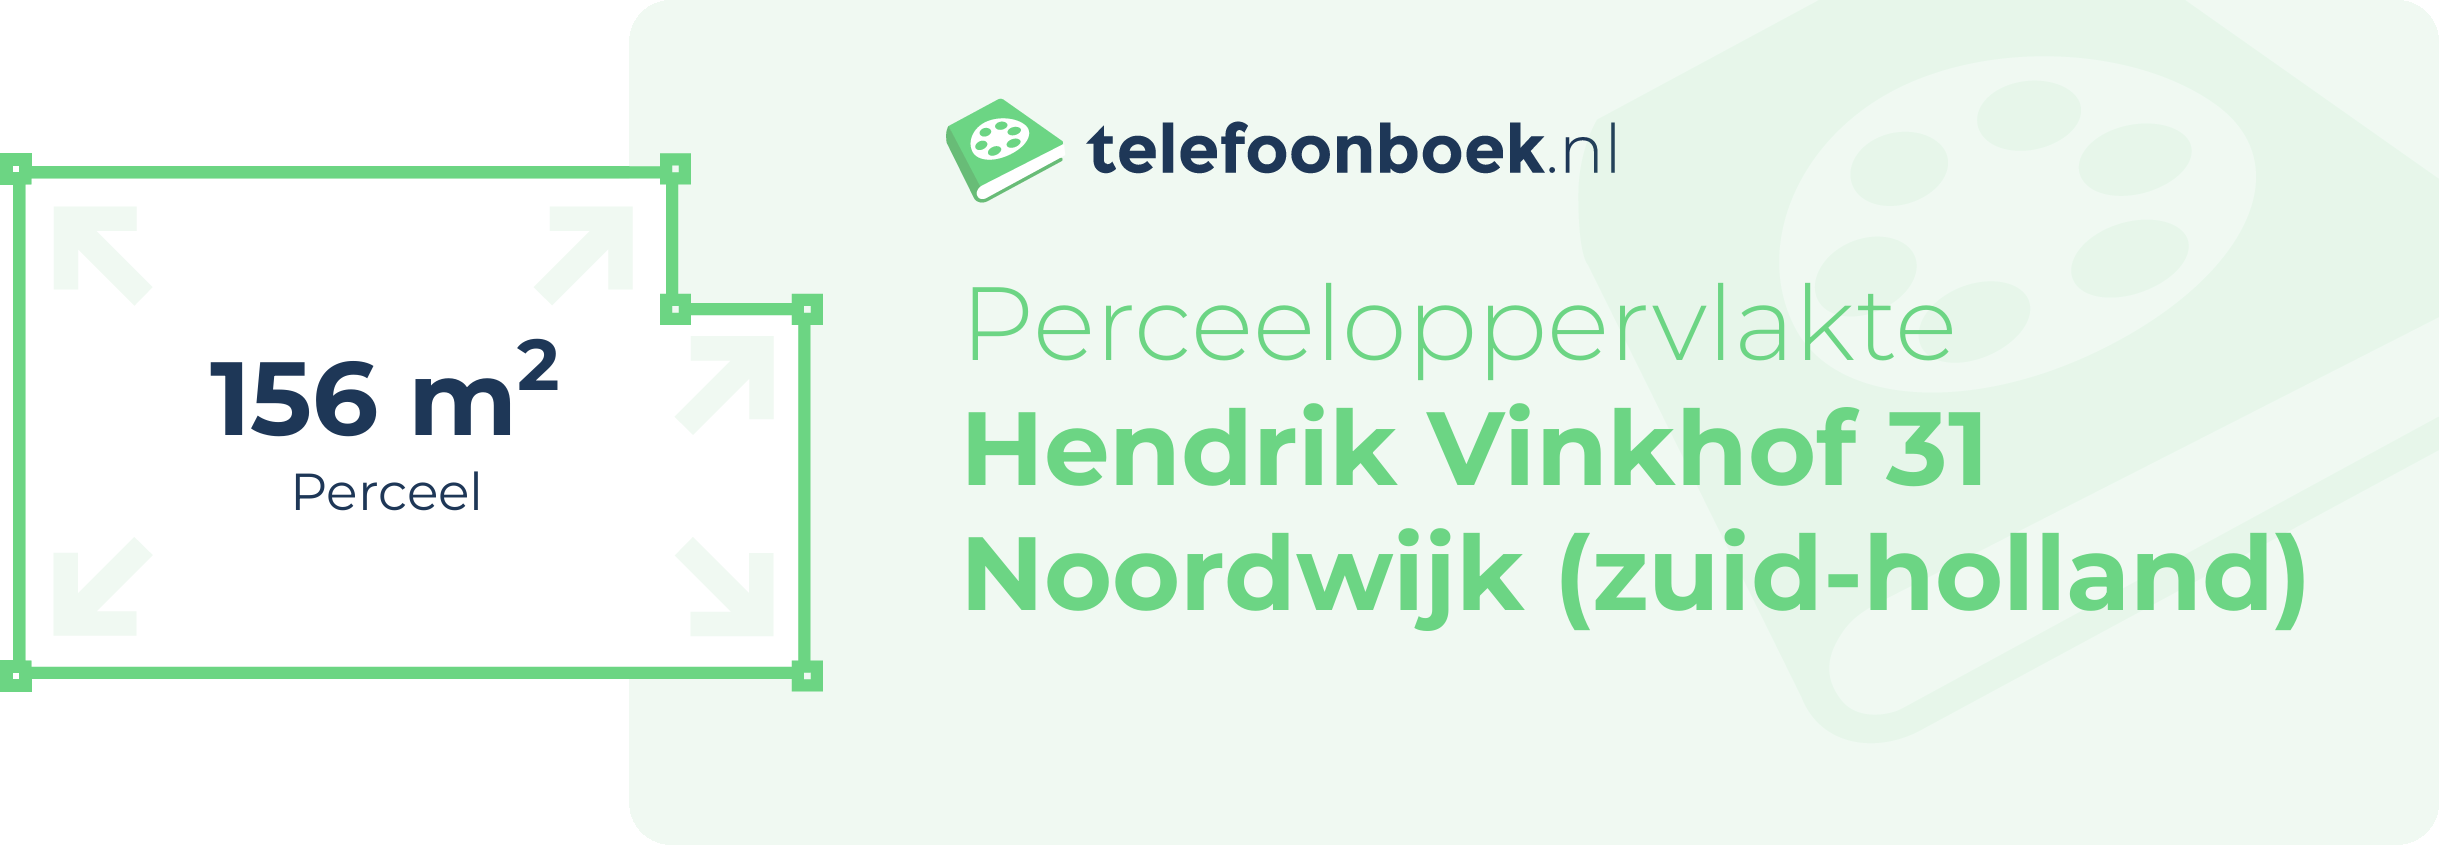 Perceeloppervlakte Hendrik Vinkhof 31 Noordwijk (Zuid-Holland)